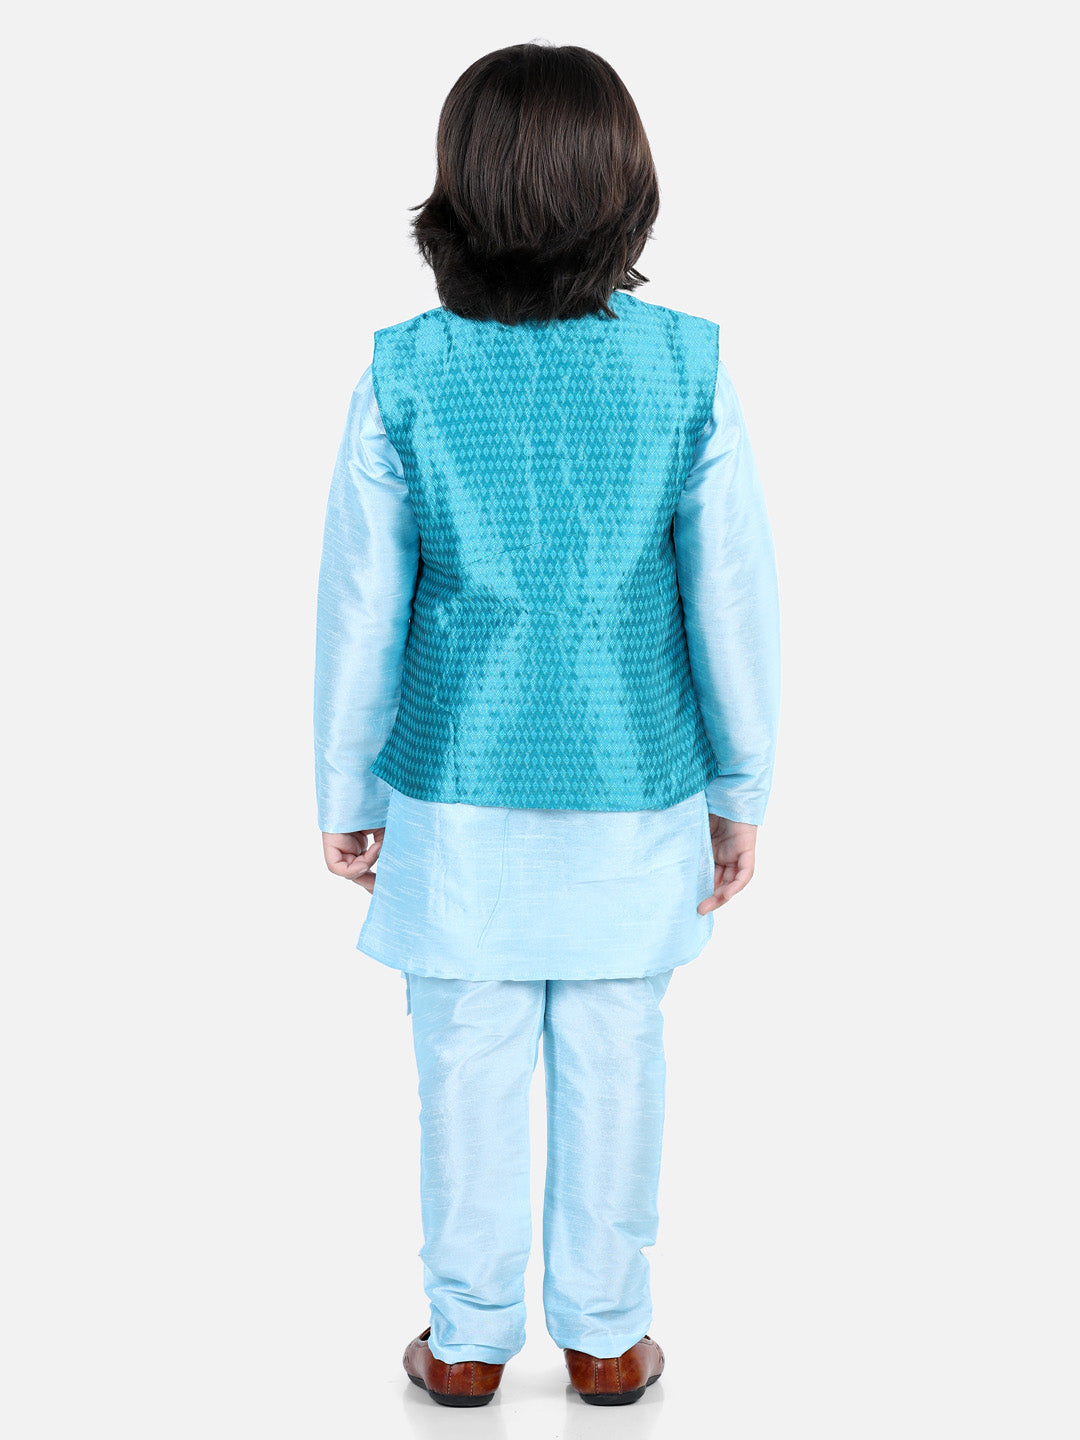 Boys Ethnic Festive Wear Assymetric Kurta Pajama with Jacquard Jacket- Blue NOZ2TOZ - Made In INDIA.